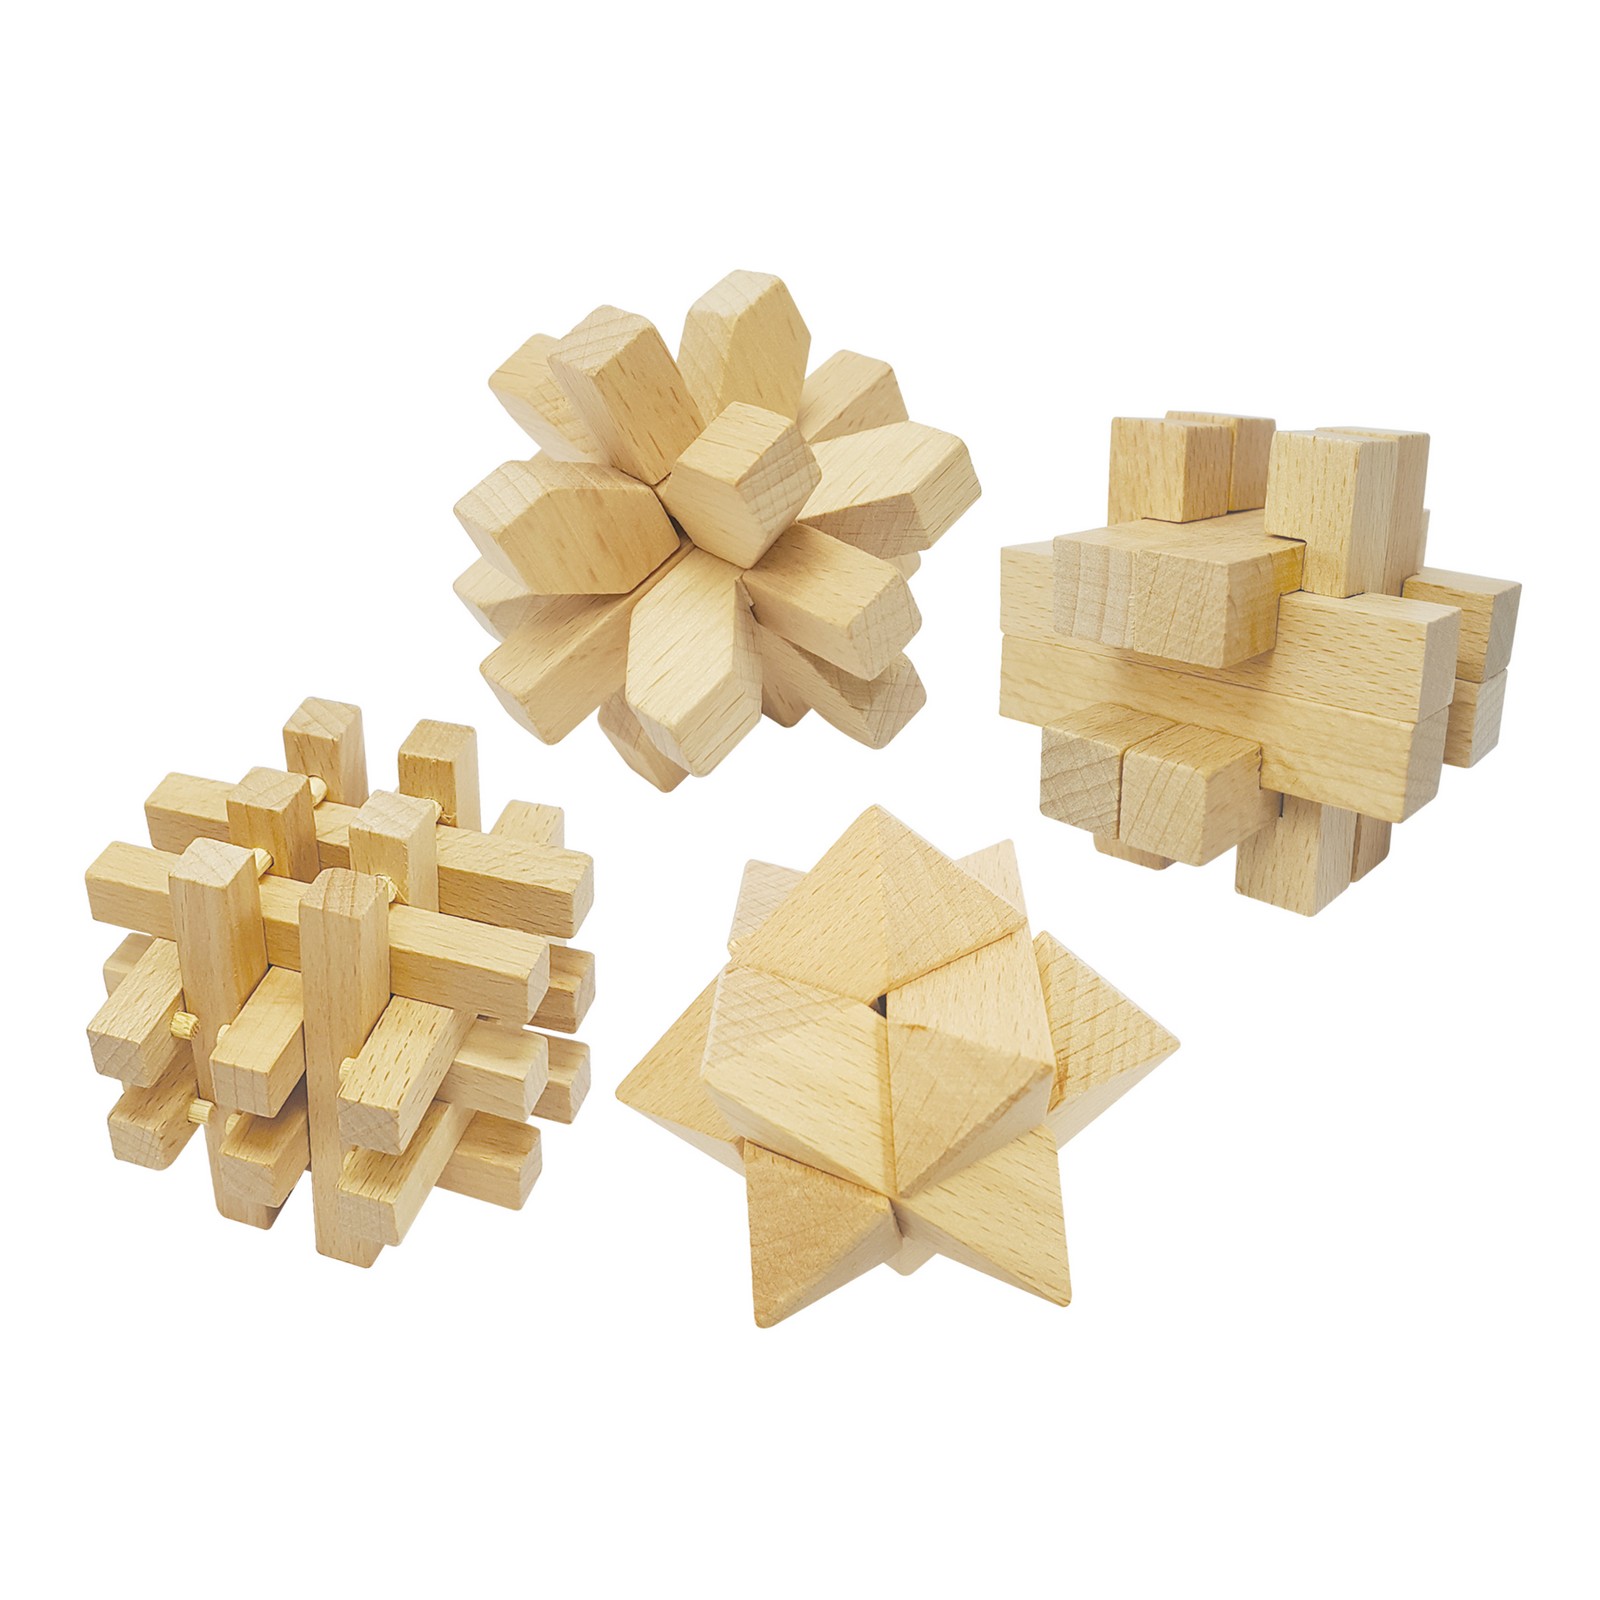 Собрать головоломку из дерева. Деревянная головоломка k2191144 Омикрон. Kairstos-Cube деревянная головоломка. Головоломка деревянный 2д пазл ай Кью Гирс. Пазлы головоломки из дерева.